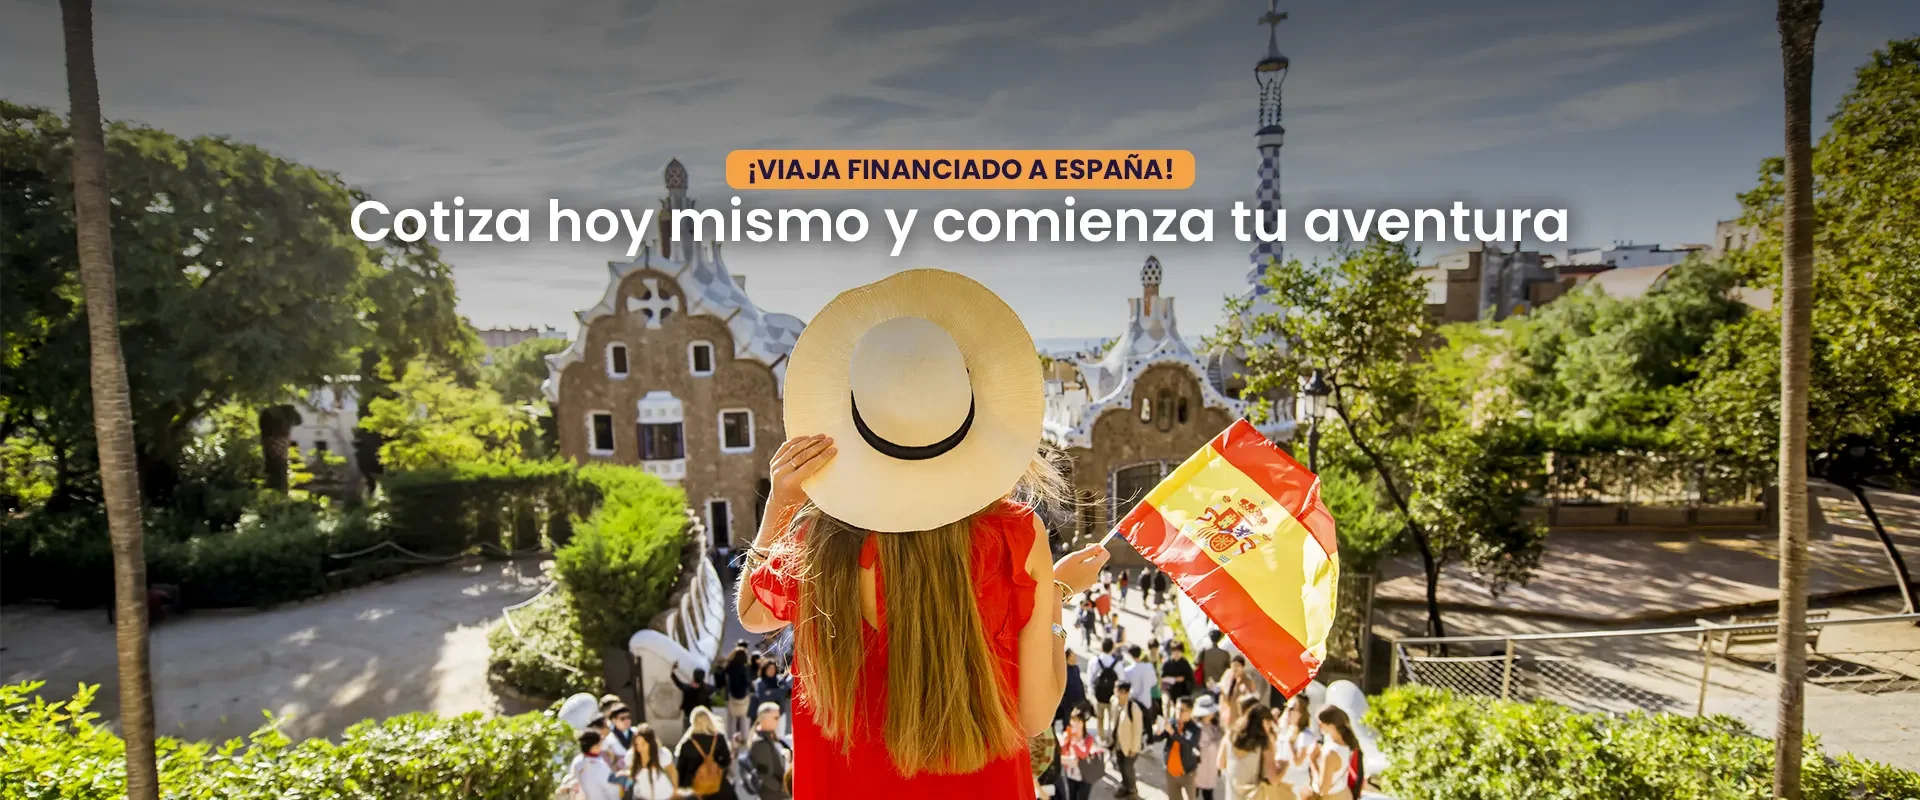 Banner Viaja financiado a España